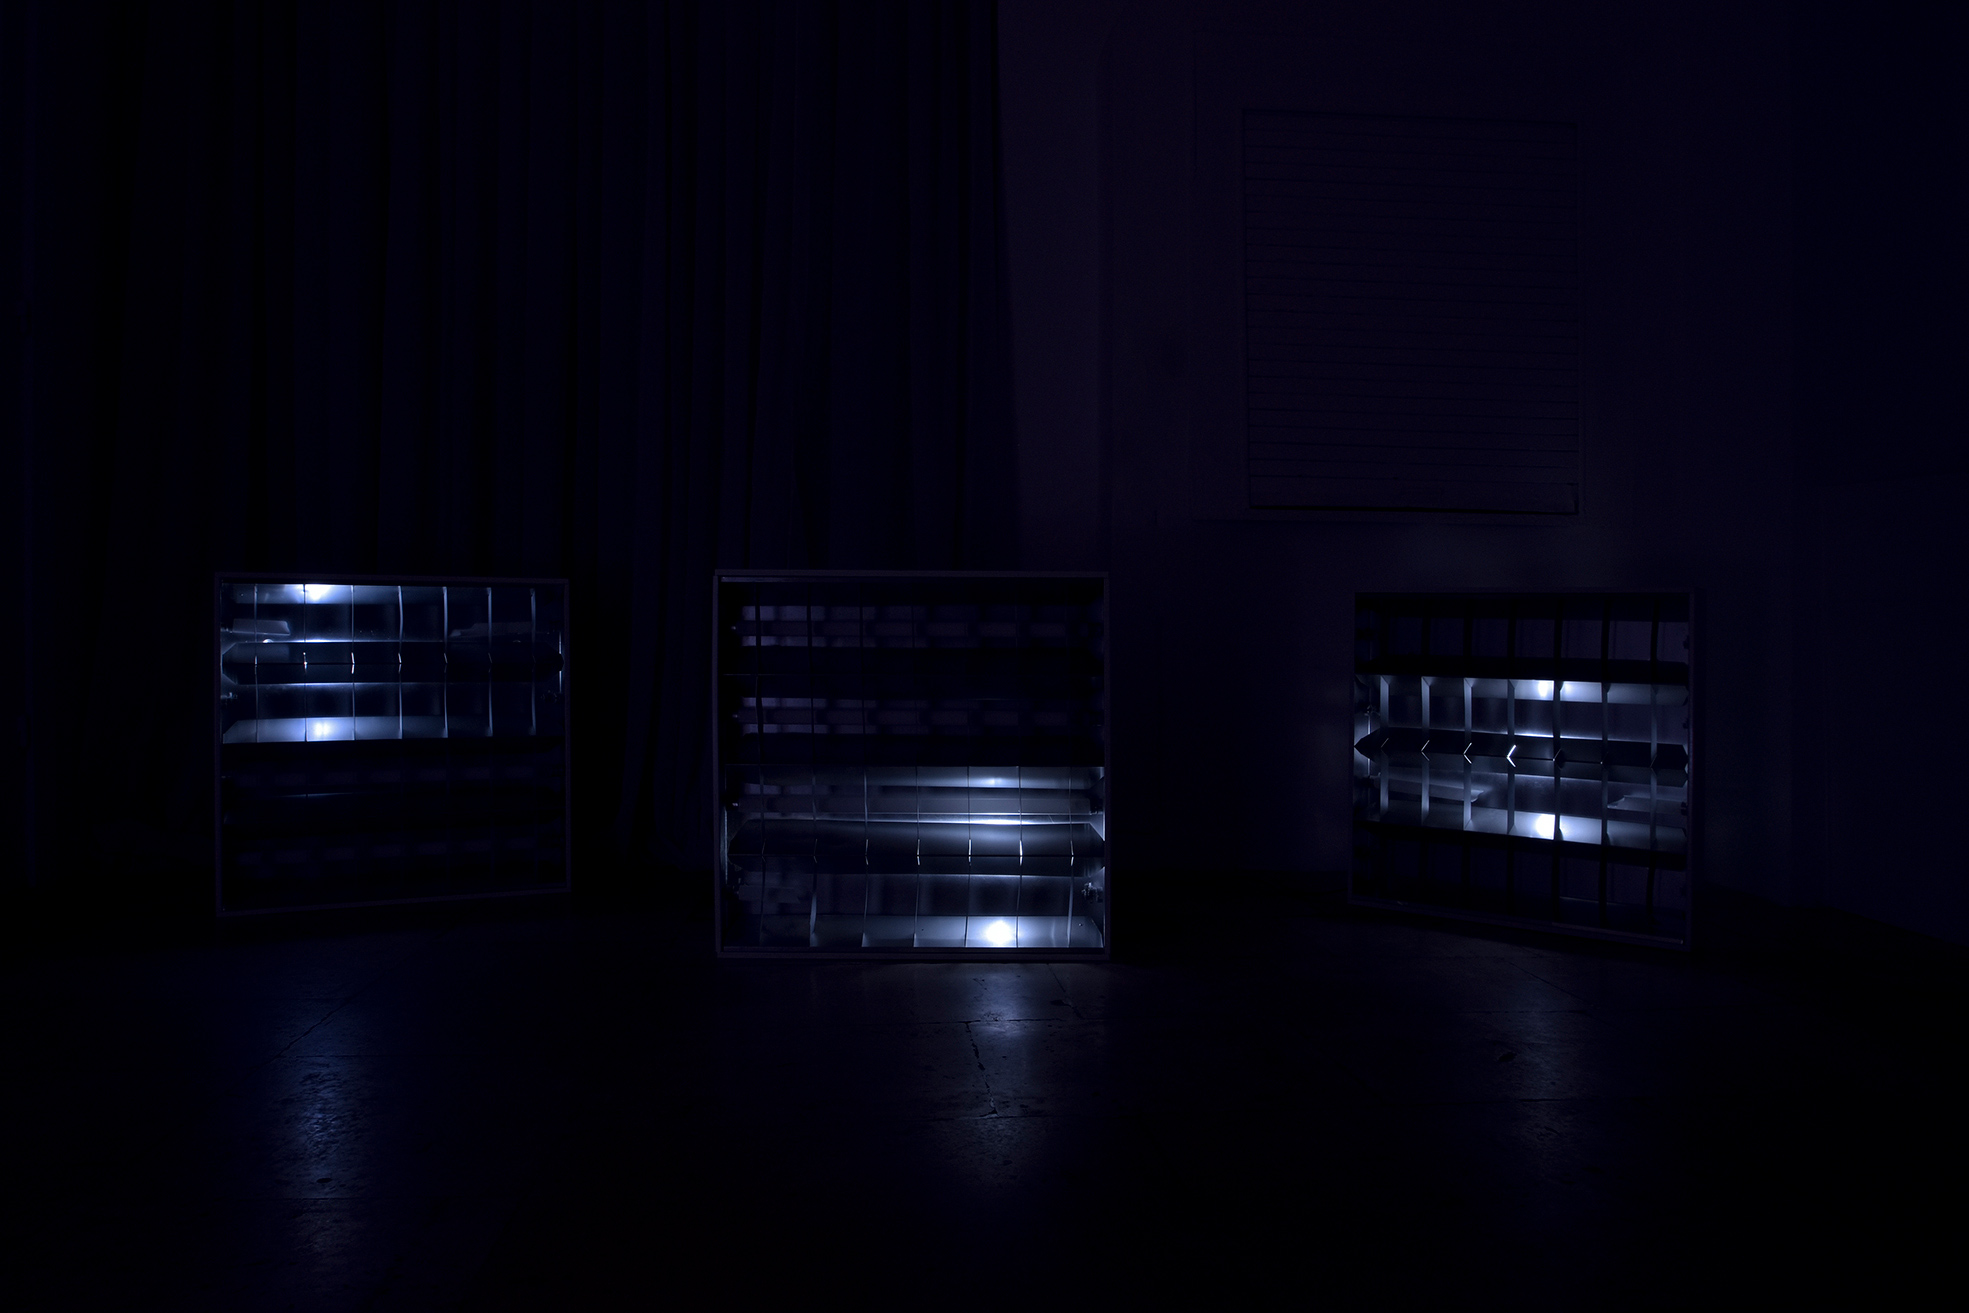 Claude Eigan, Under-C-Level. Plafoniere da soffitto, tubi neon rotti, luci LED ‘breathing’. Dimensioni variabili, dimensioni di ciascun box: 62 x 62 x 10 cm, 2016.